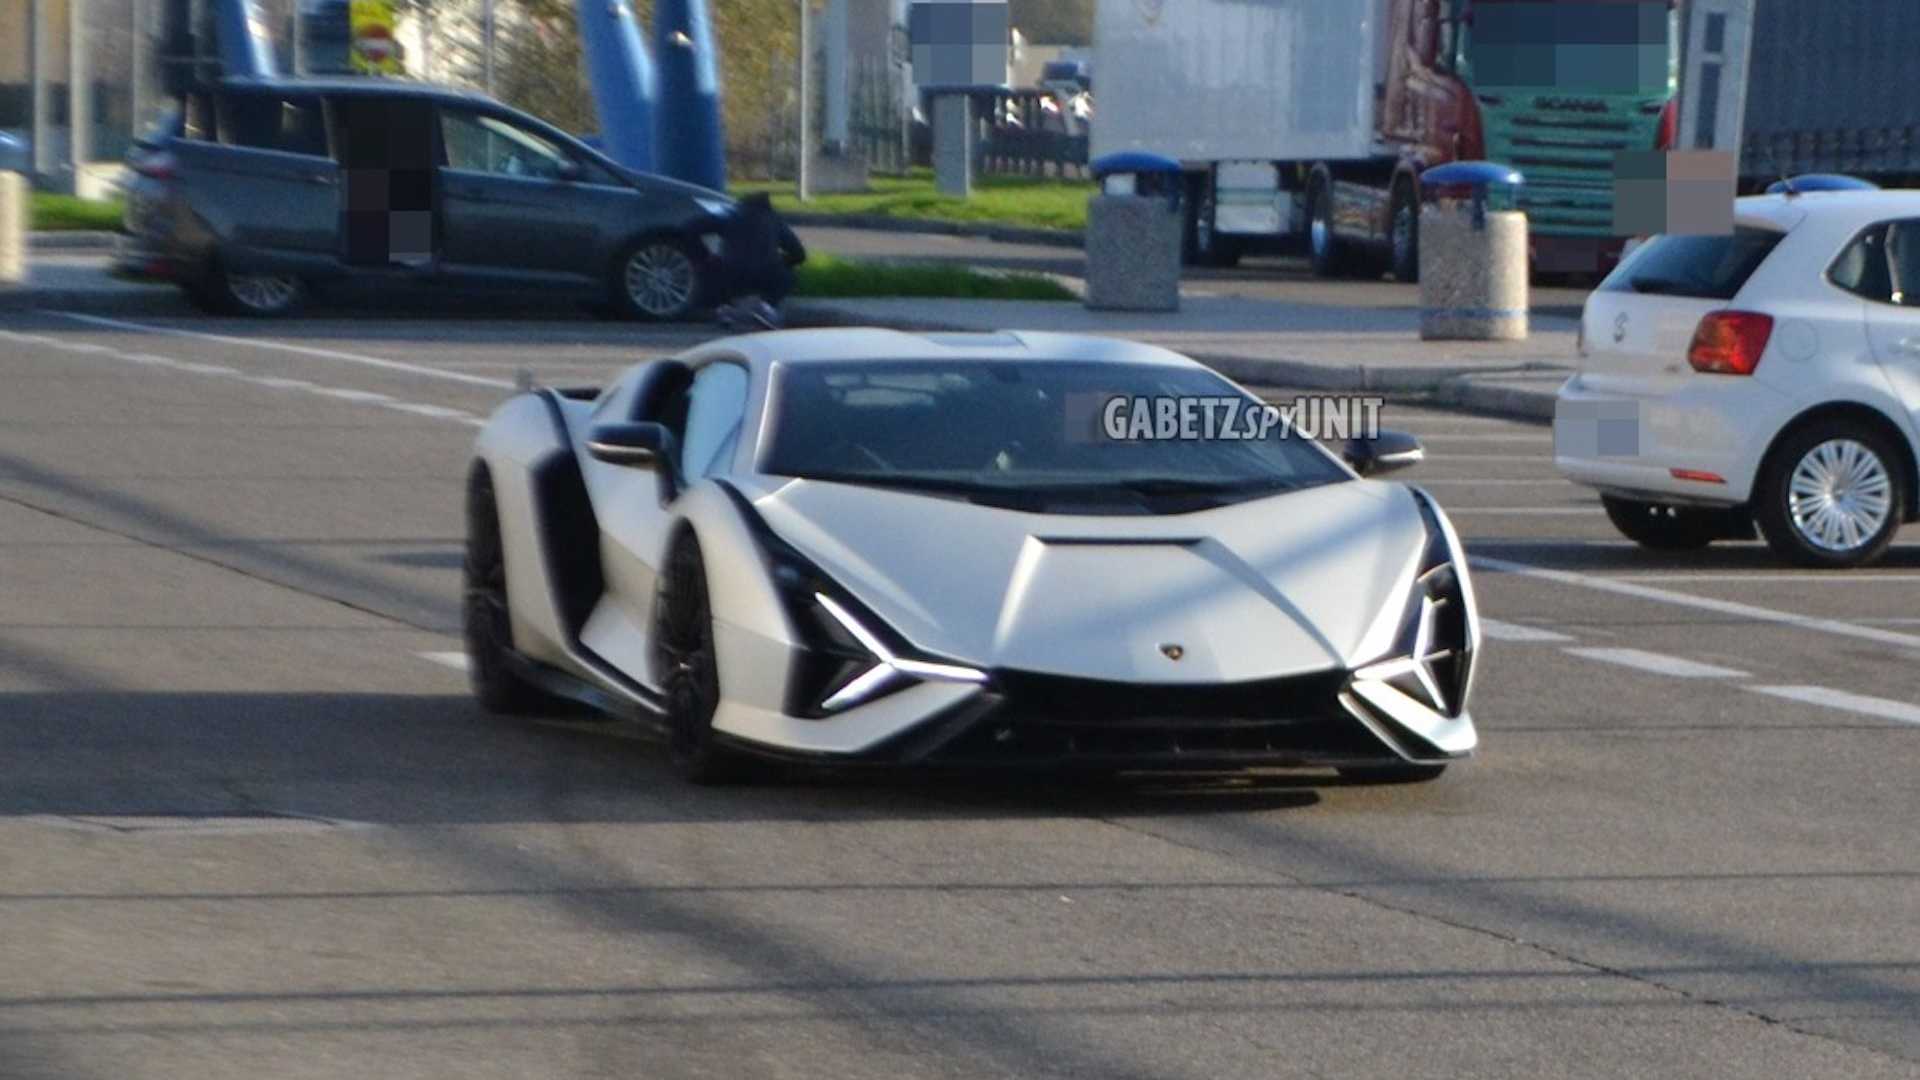 Lamborghini sian